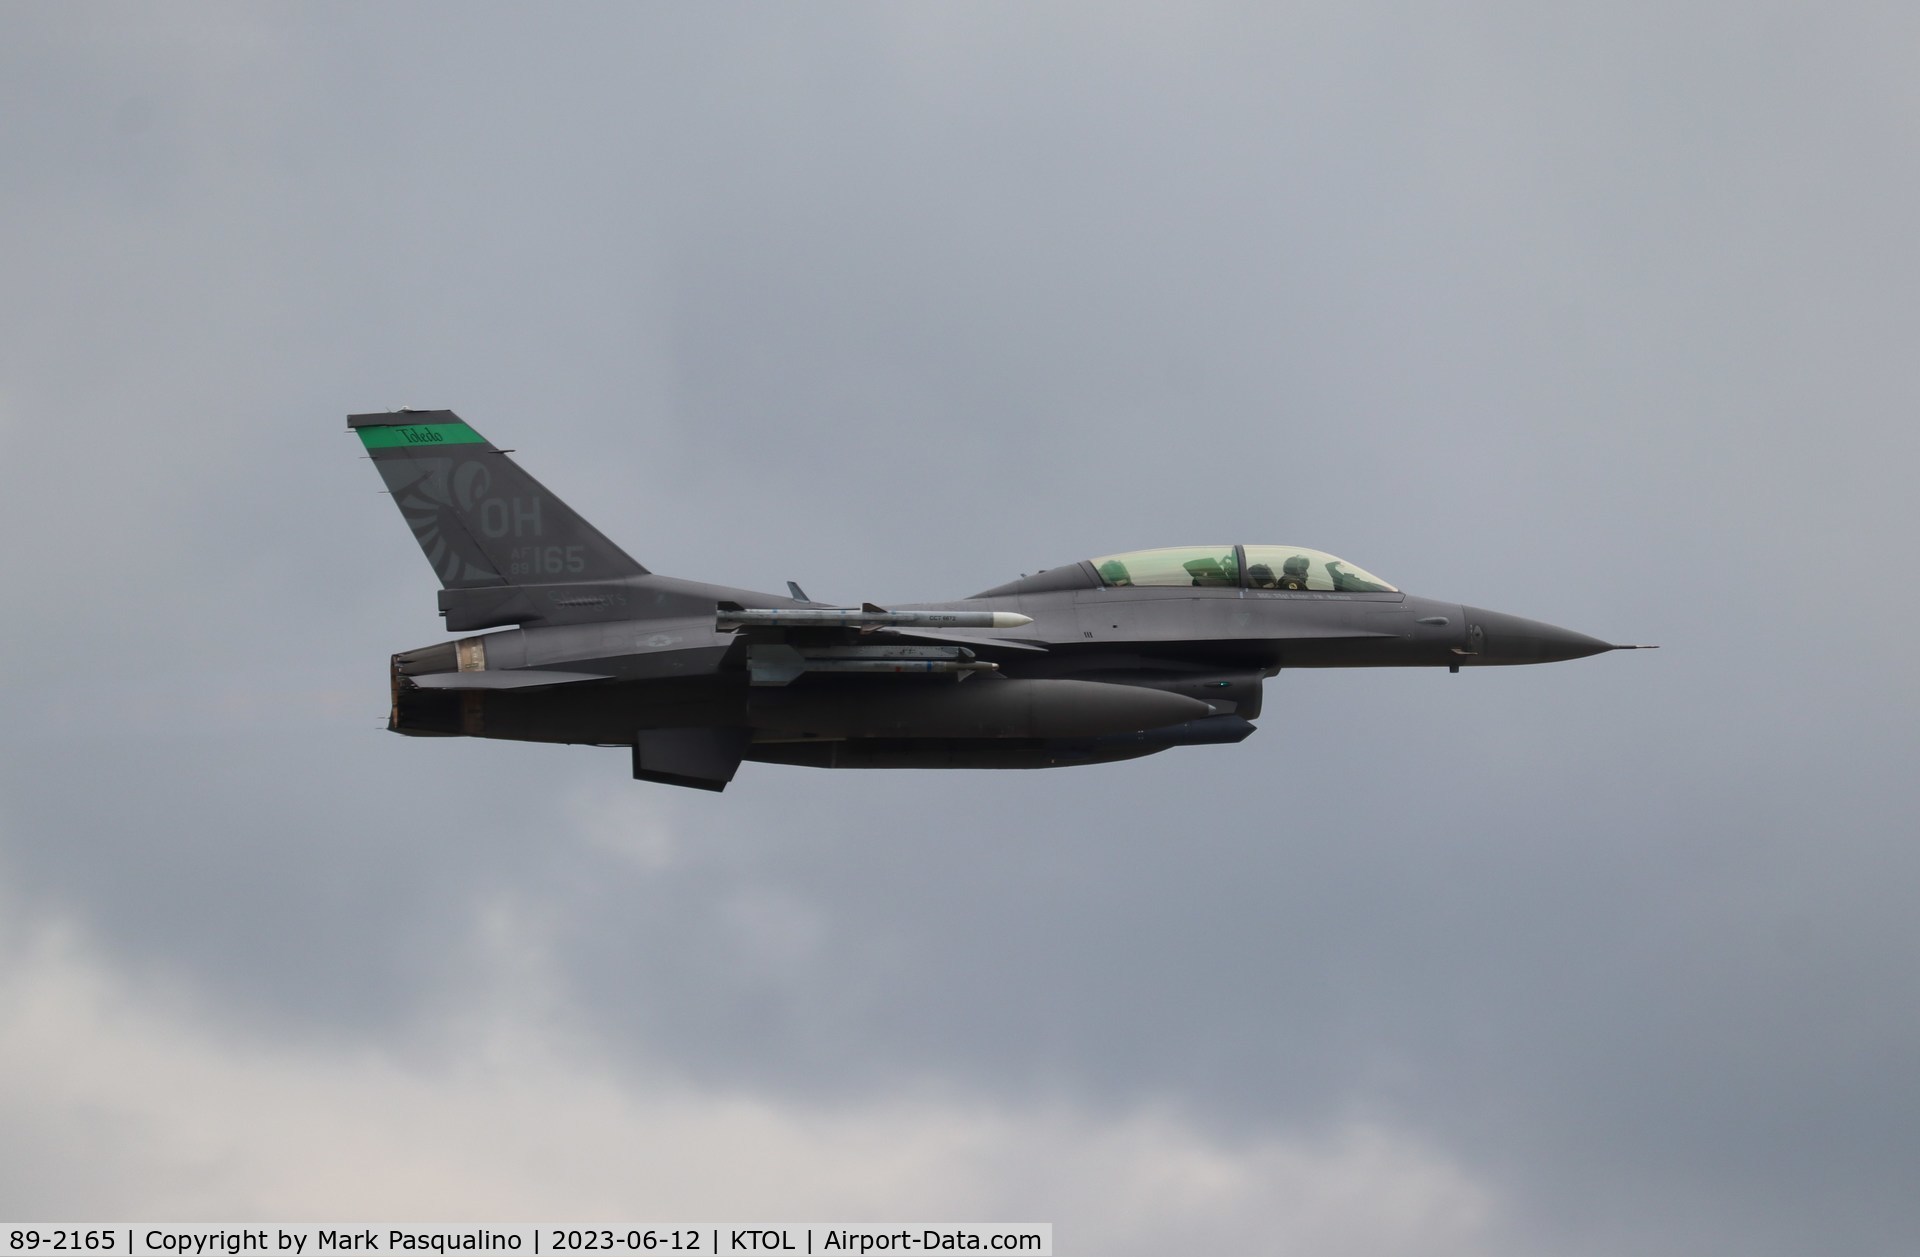 89-2165, 1989 General Dynamics F-16D Fighting Falcon C/N 1D-40, General Dynamics F-16D Fighting Falcon